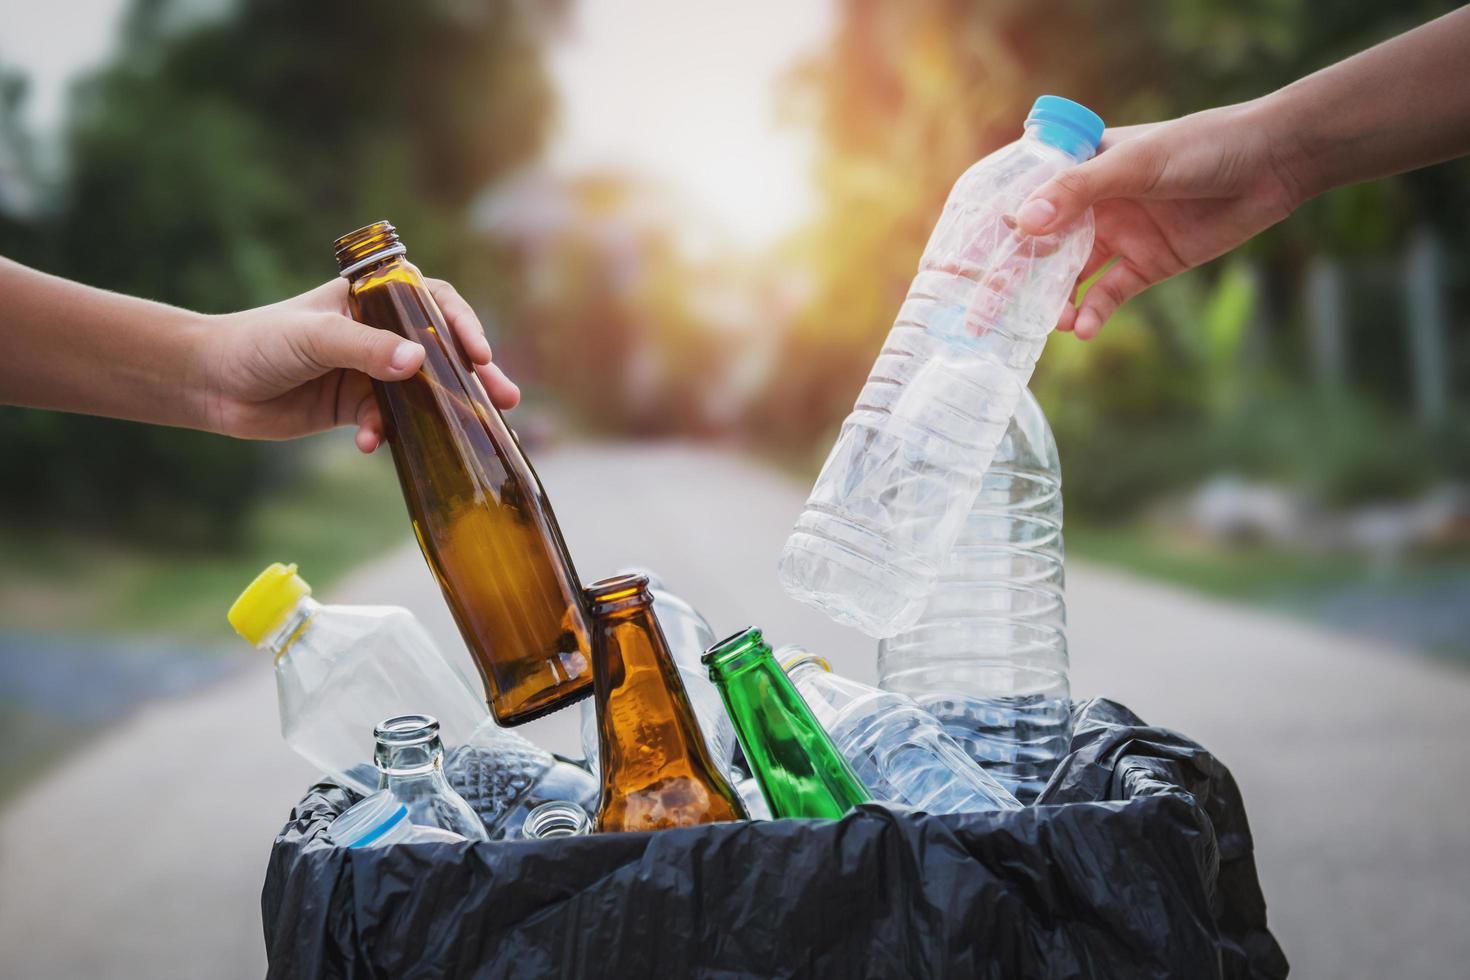 mão de pessoas segurando plástico de garrafa de lixo e vidro colocando em saco de reciclagem para limpeza foto